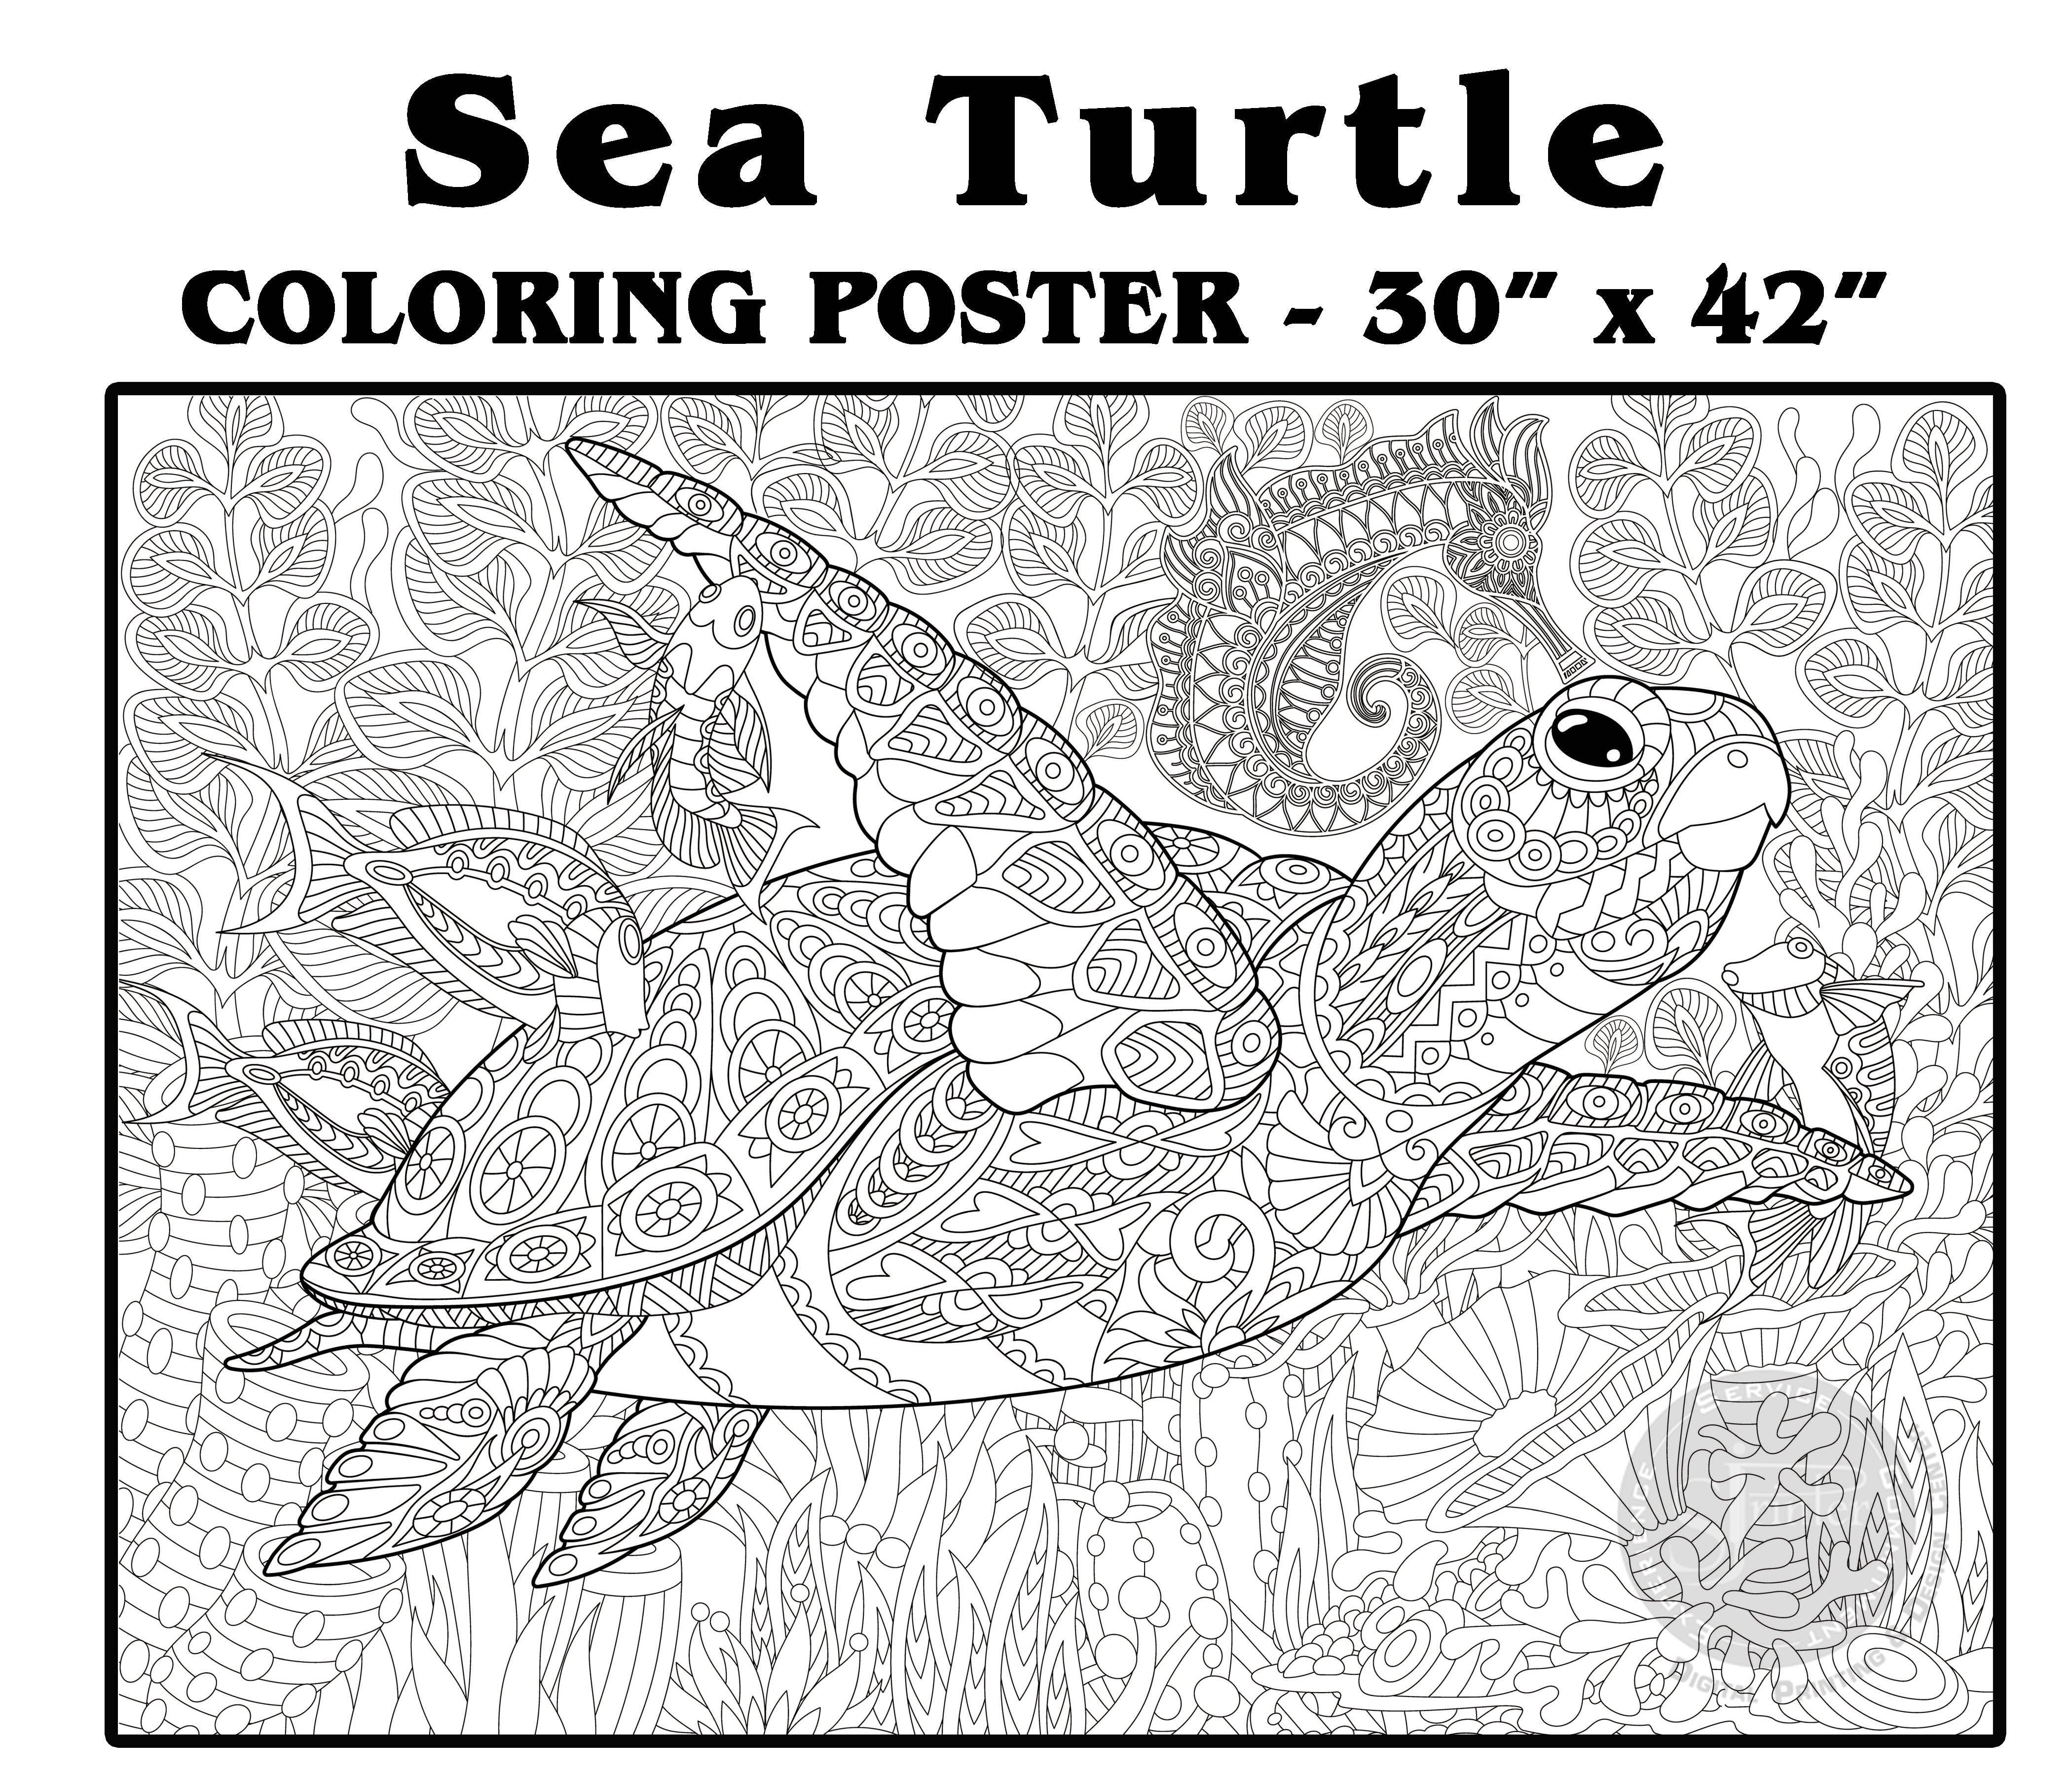 Sea Turtle - 30" x 42" - SJPrinter 